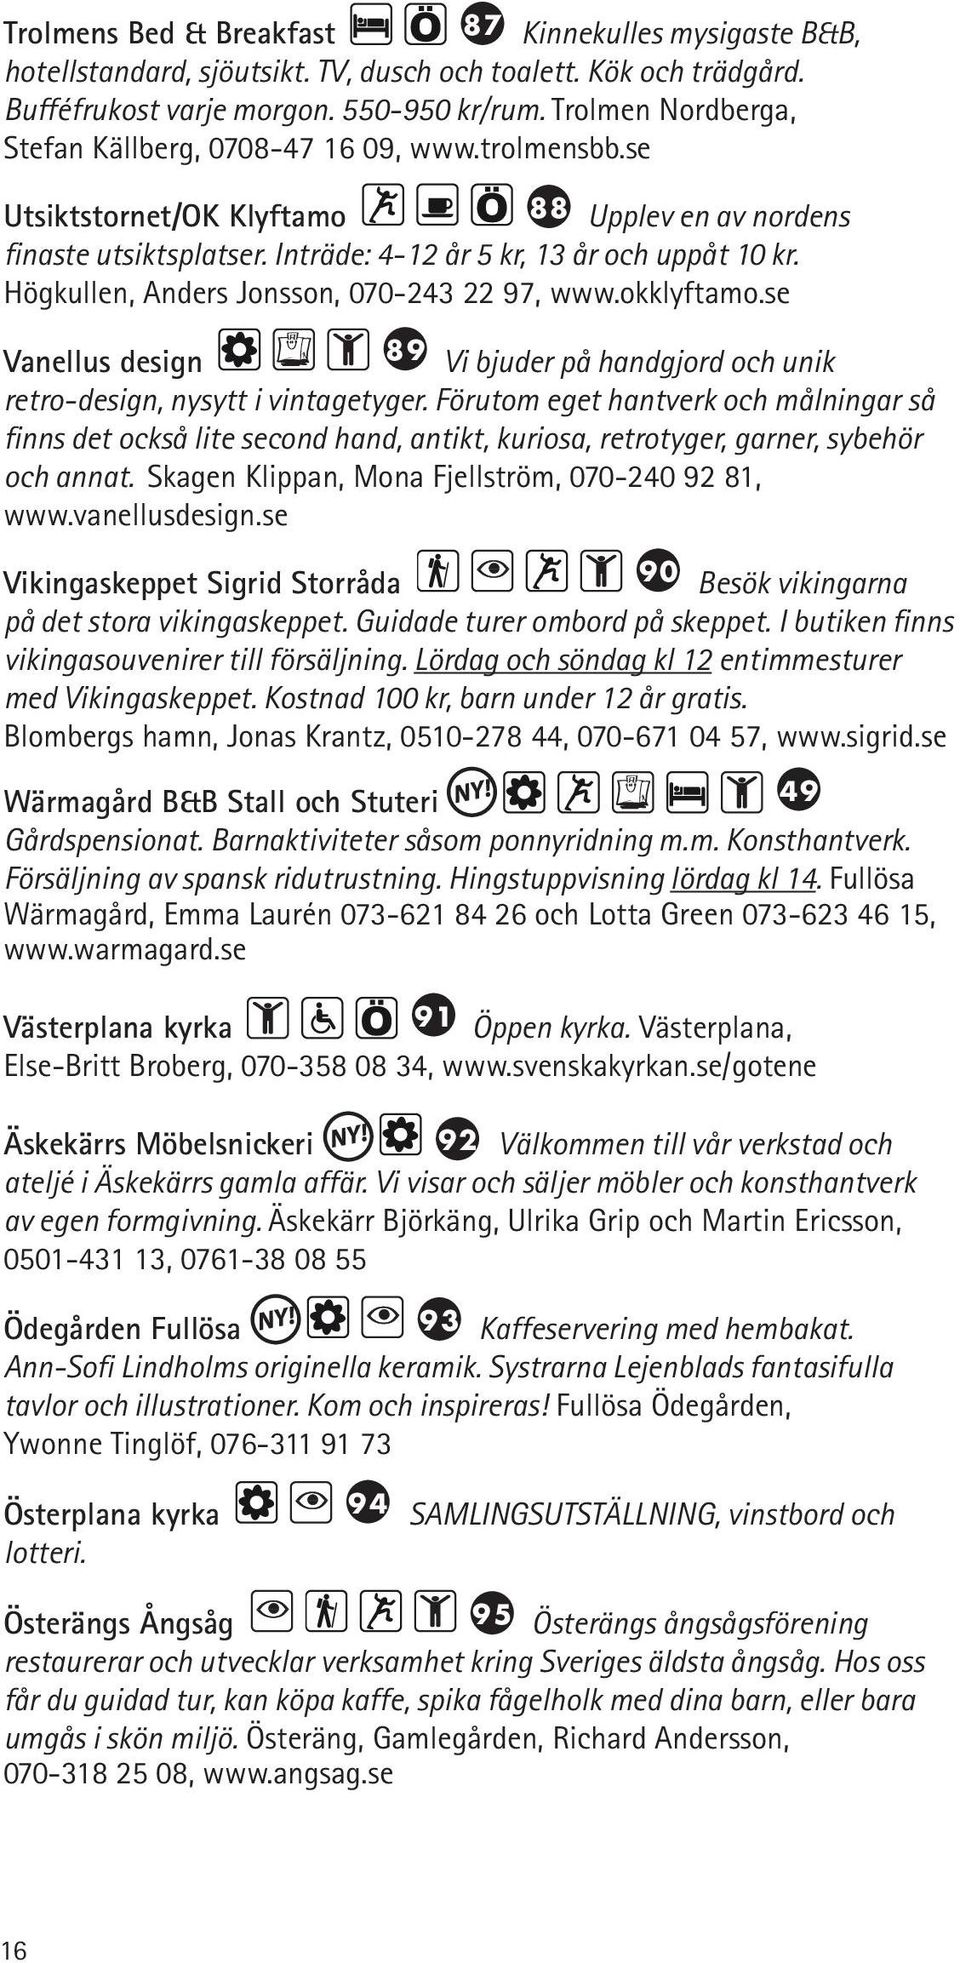 Högkullen, Anders Jonsson, 070-243 22 97, www.okklyftamo.se 89 Vi bjuder på handgjord och unik Vanellus design retro-design, nysytt i vintagetyger.